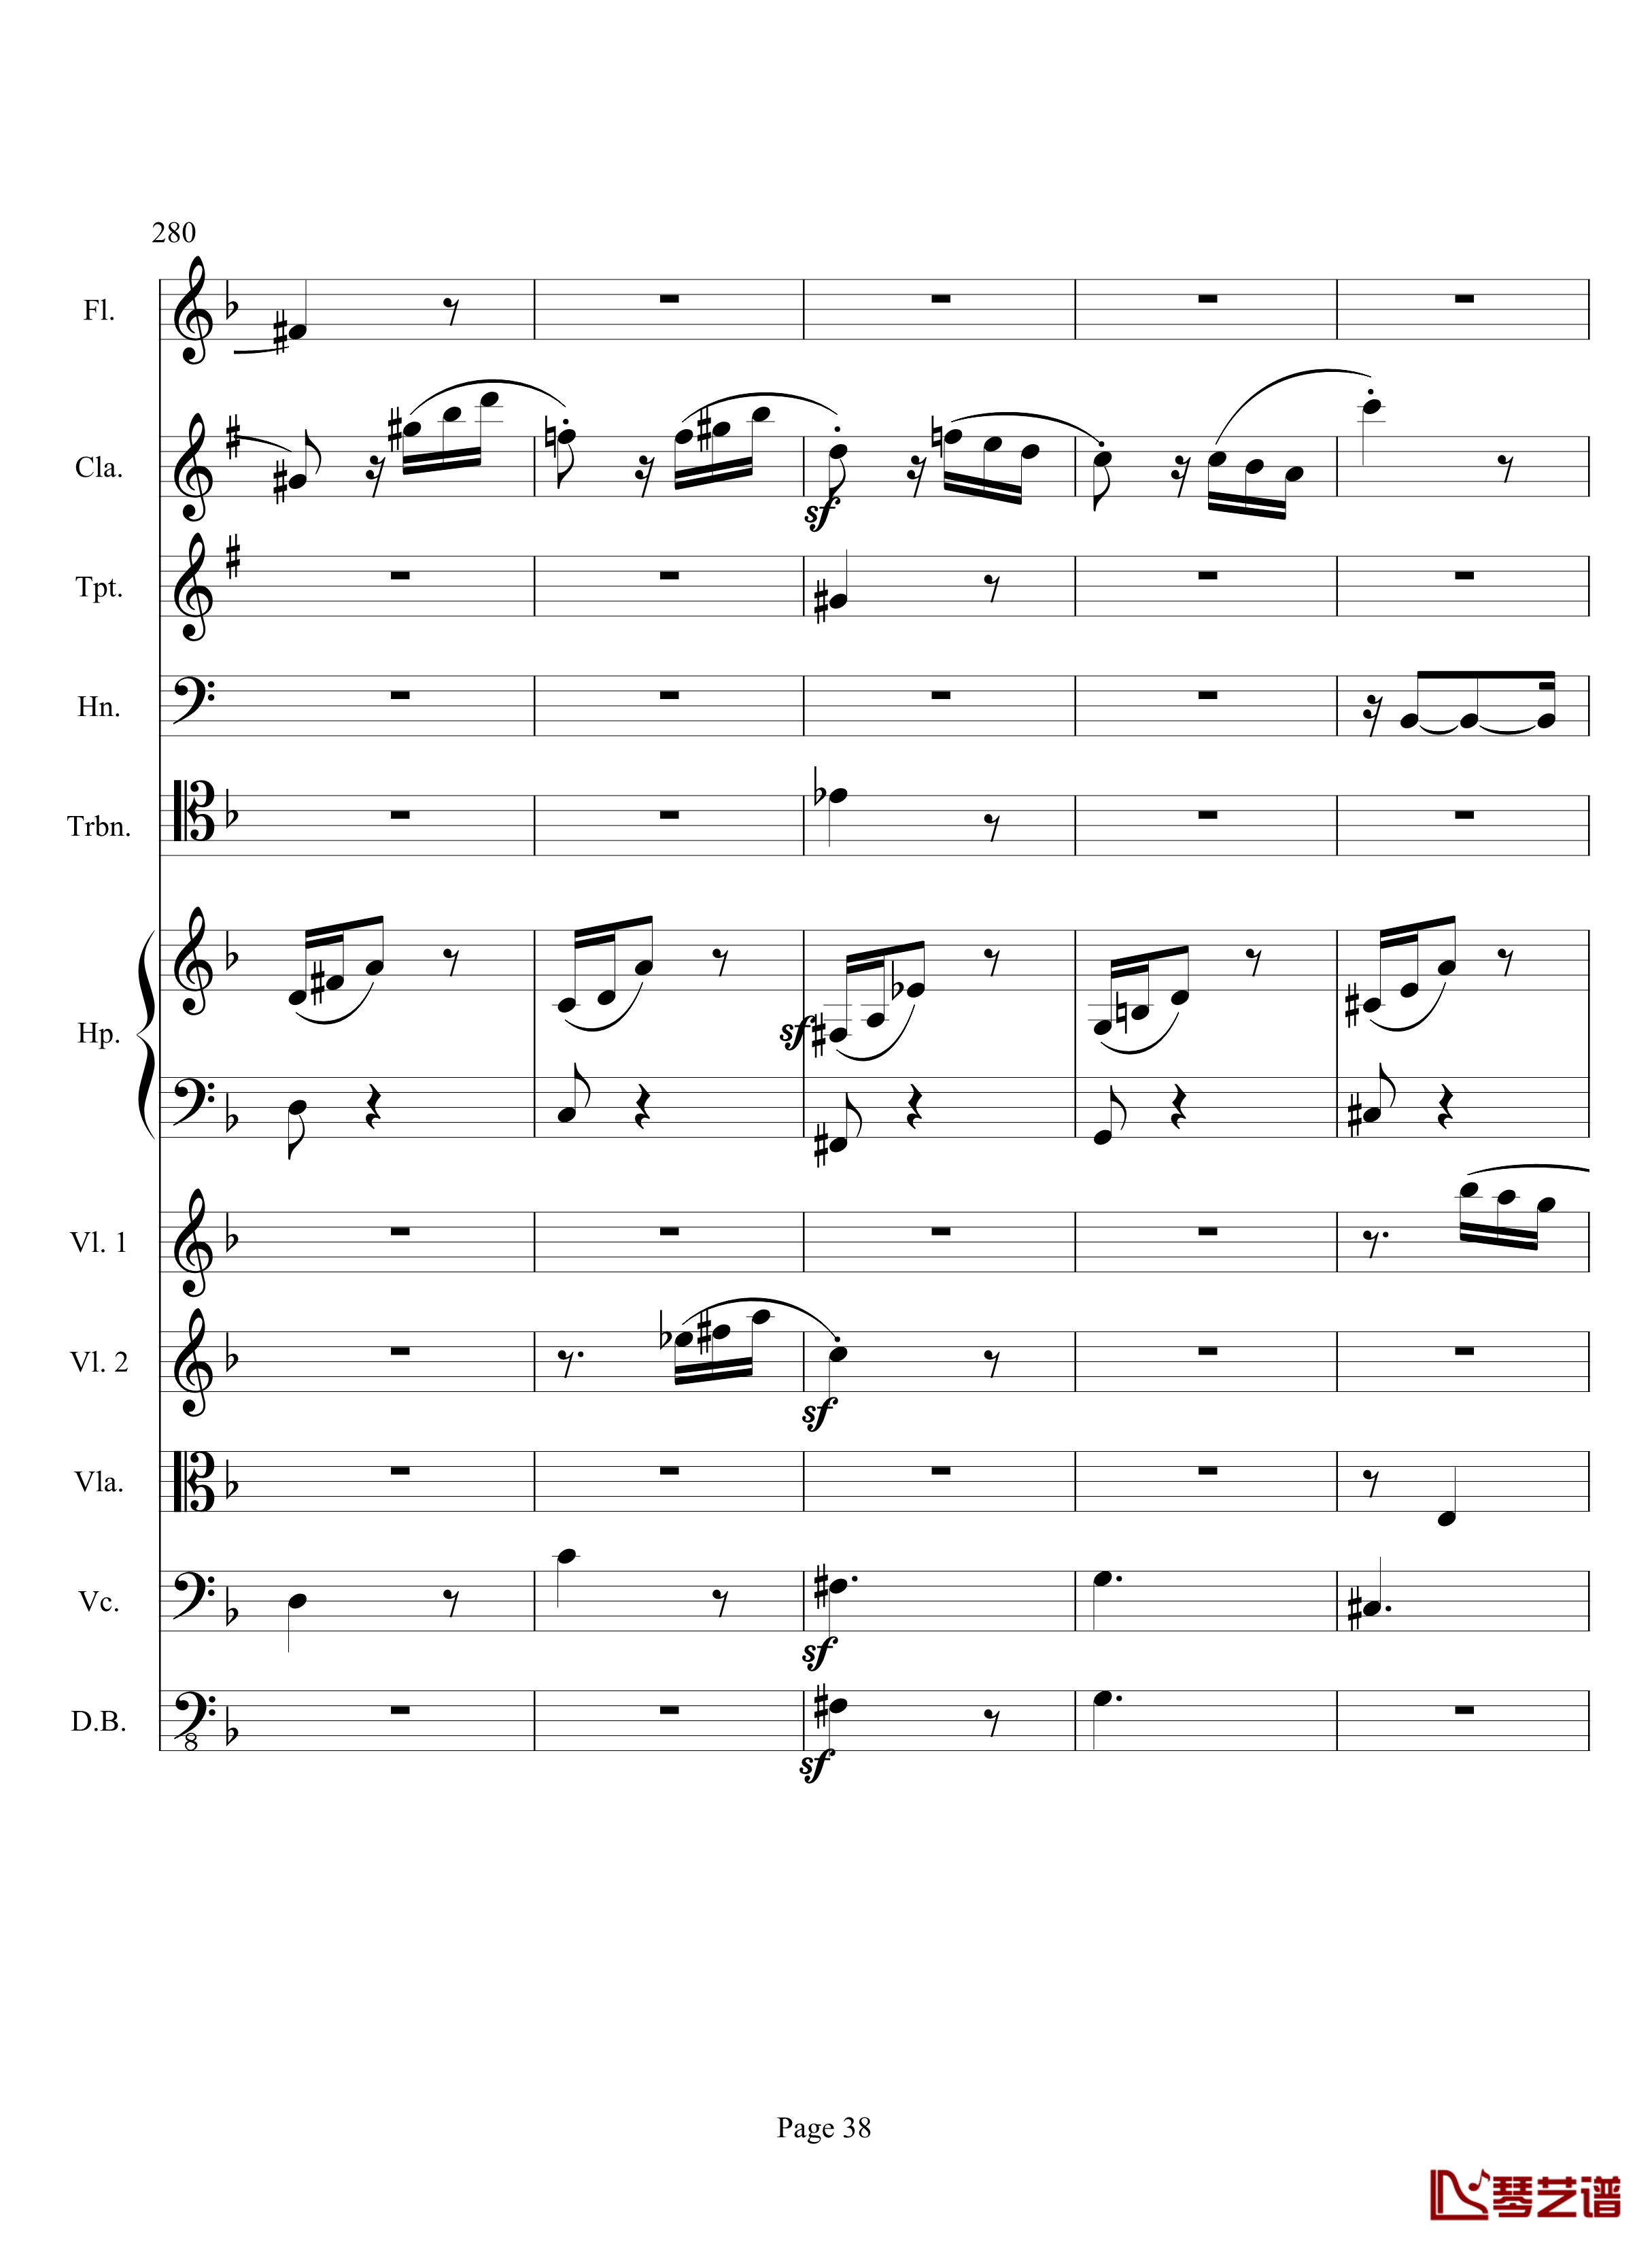 奏鸣曲之交响钢琴谱-第17首-Ⅲ-贝多芬-beethoven38